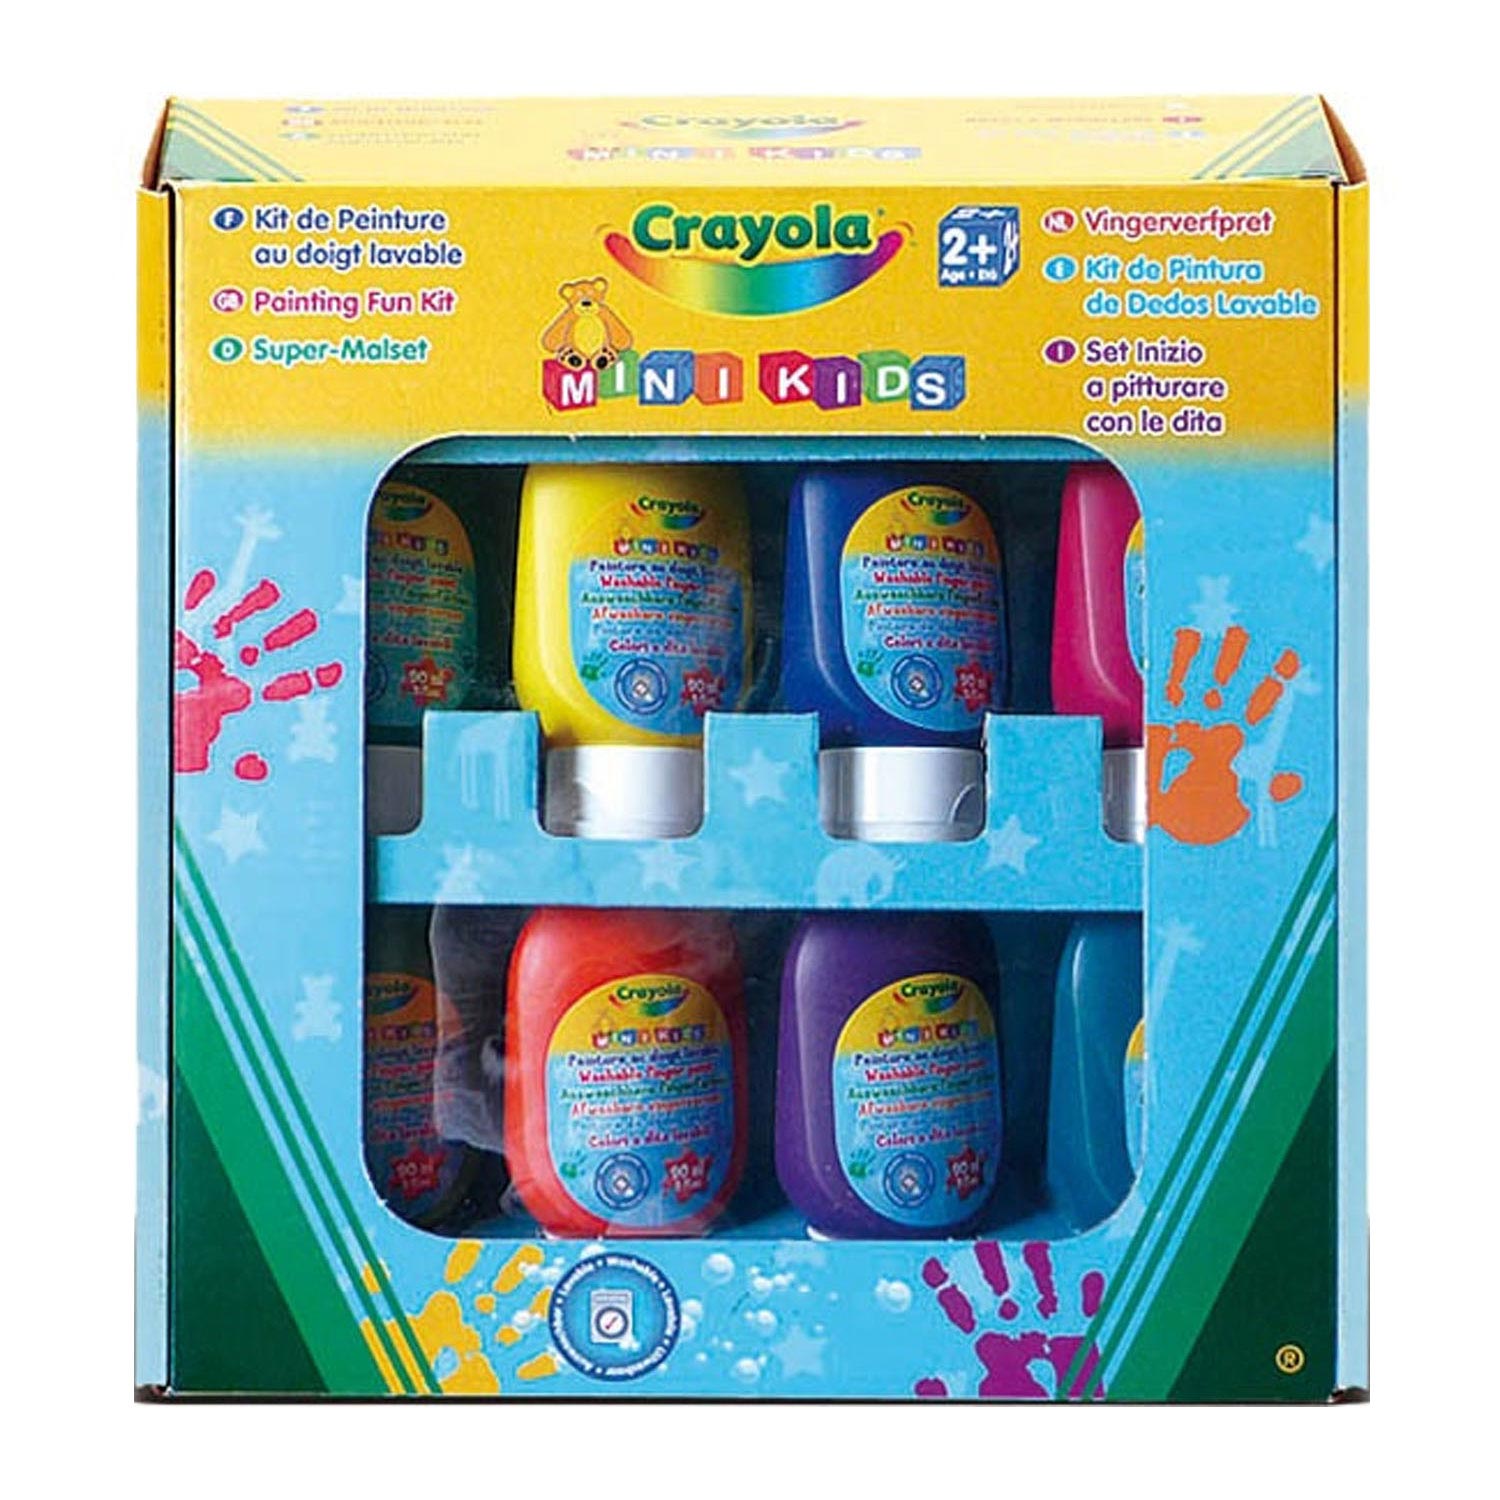 Crayola Mini Kids Washable Finger Paint, 8pcs.